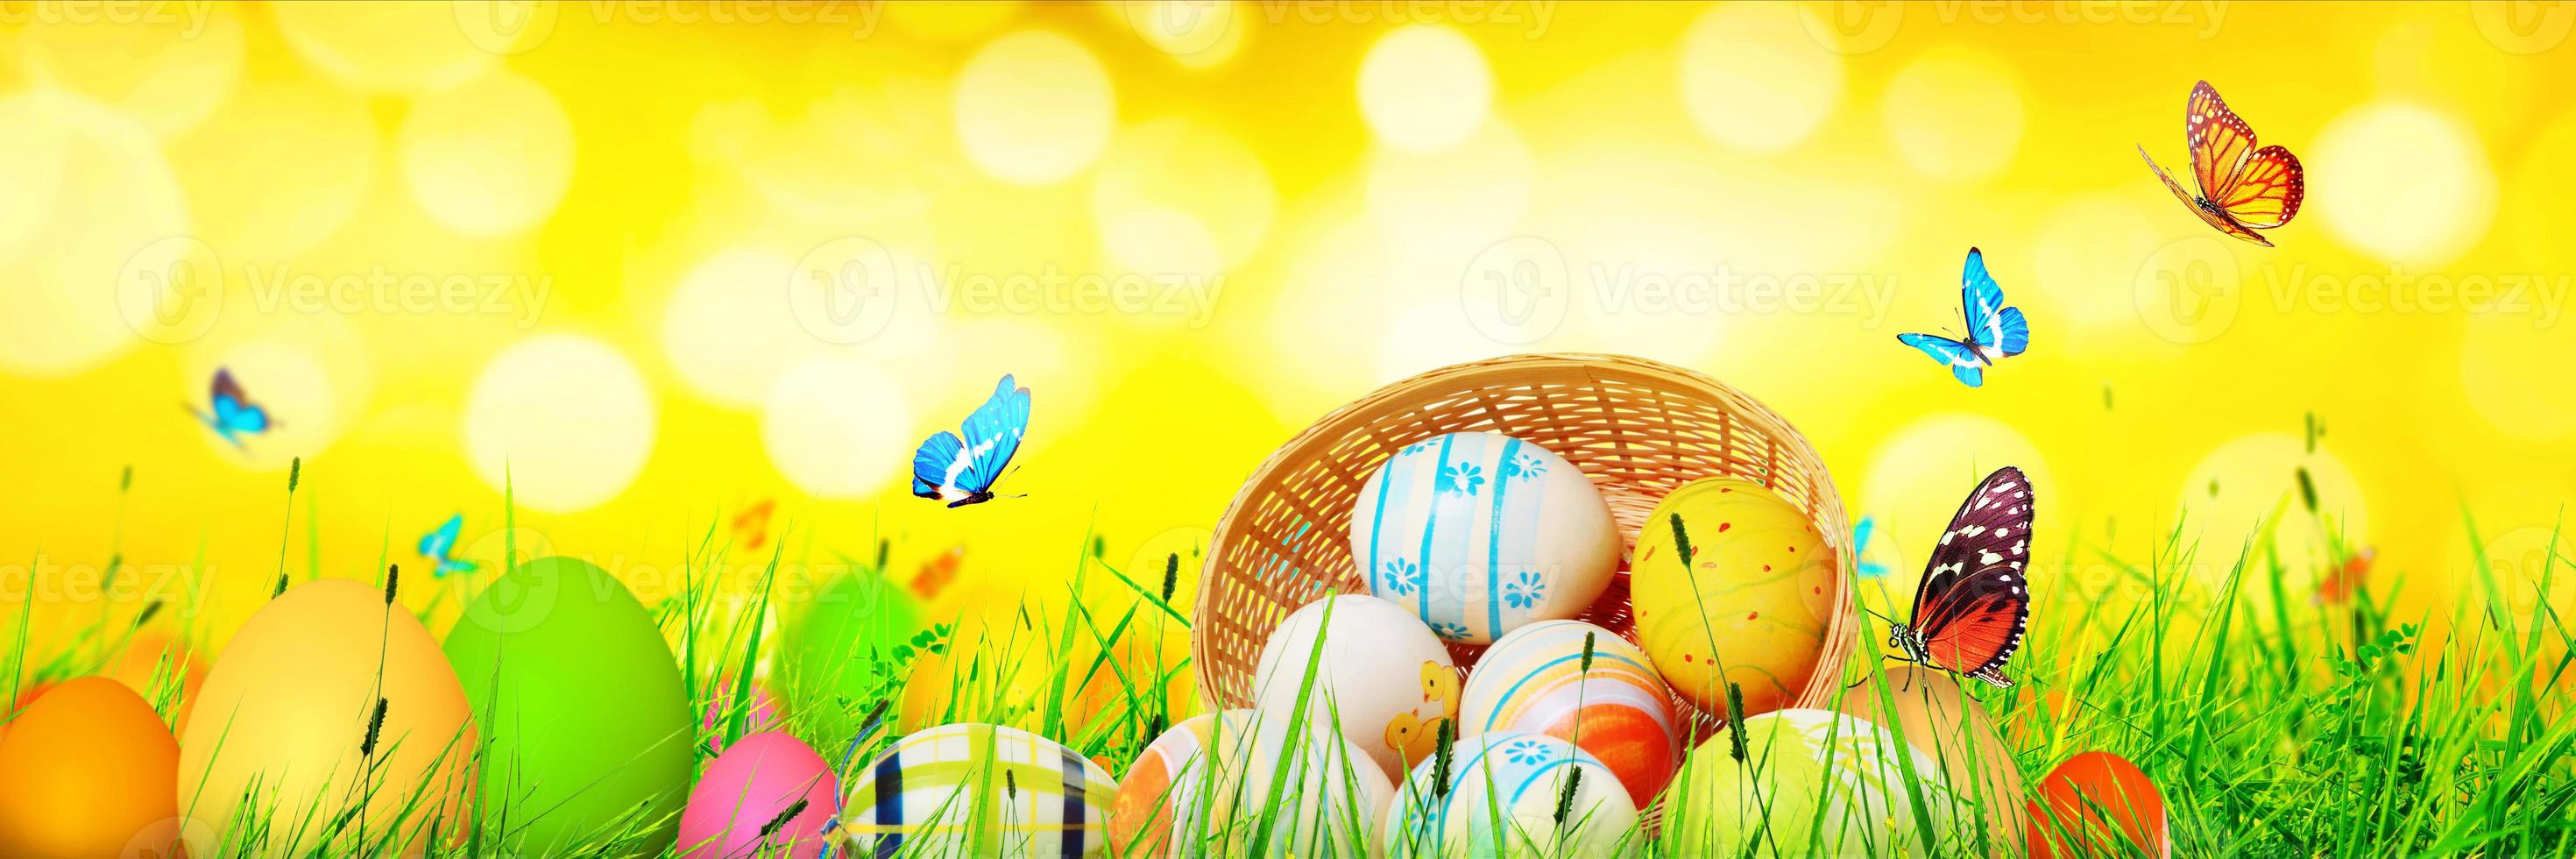 lindo fundo de páscoa com ovos de páscoa coloridos foto